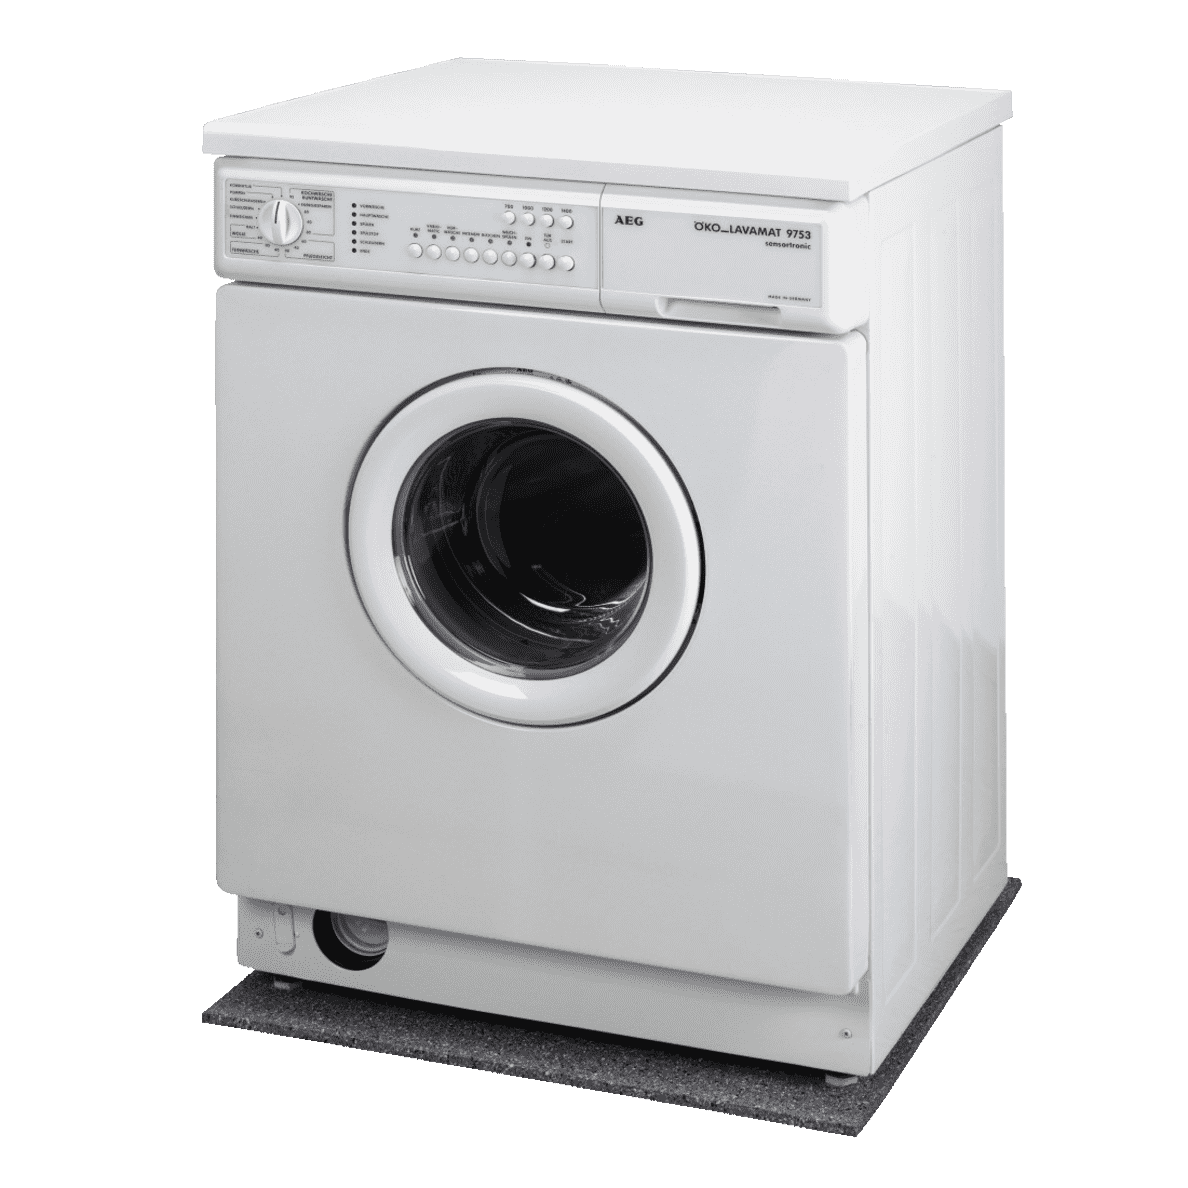 XAVAX Antirutschmatte Waschmaschine unter einer Waschmaschine fast frontaler Blick